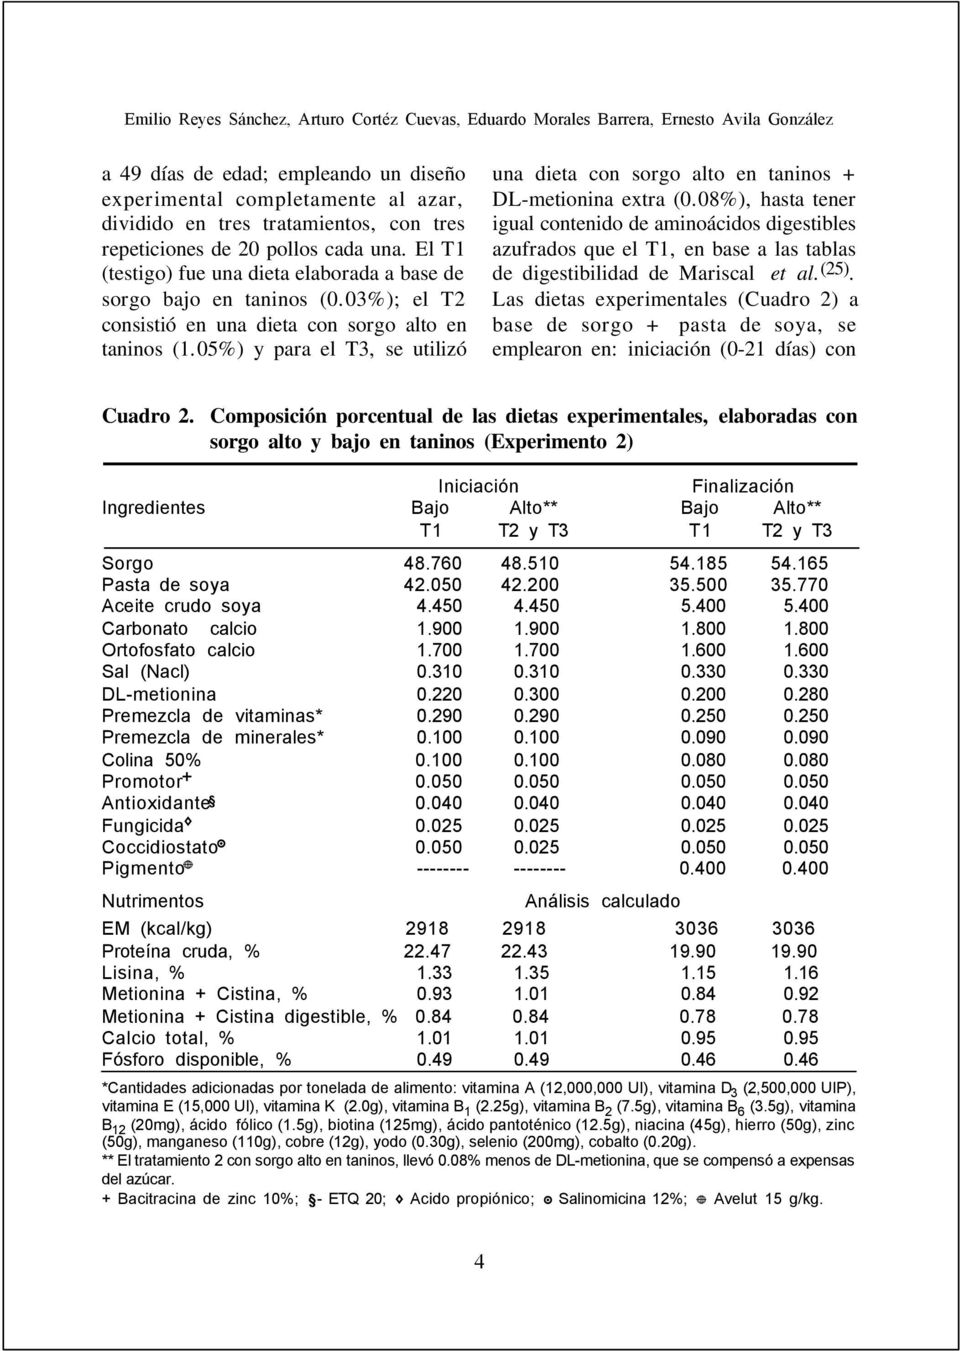 05%) y para el T3, se utilizó una dieta con sorgo alto en taninos + DL-metionina extra (0.